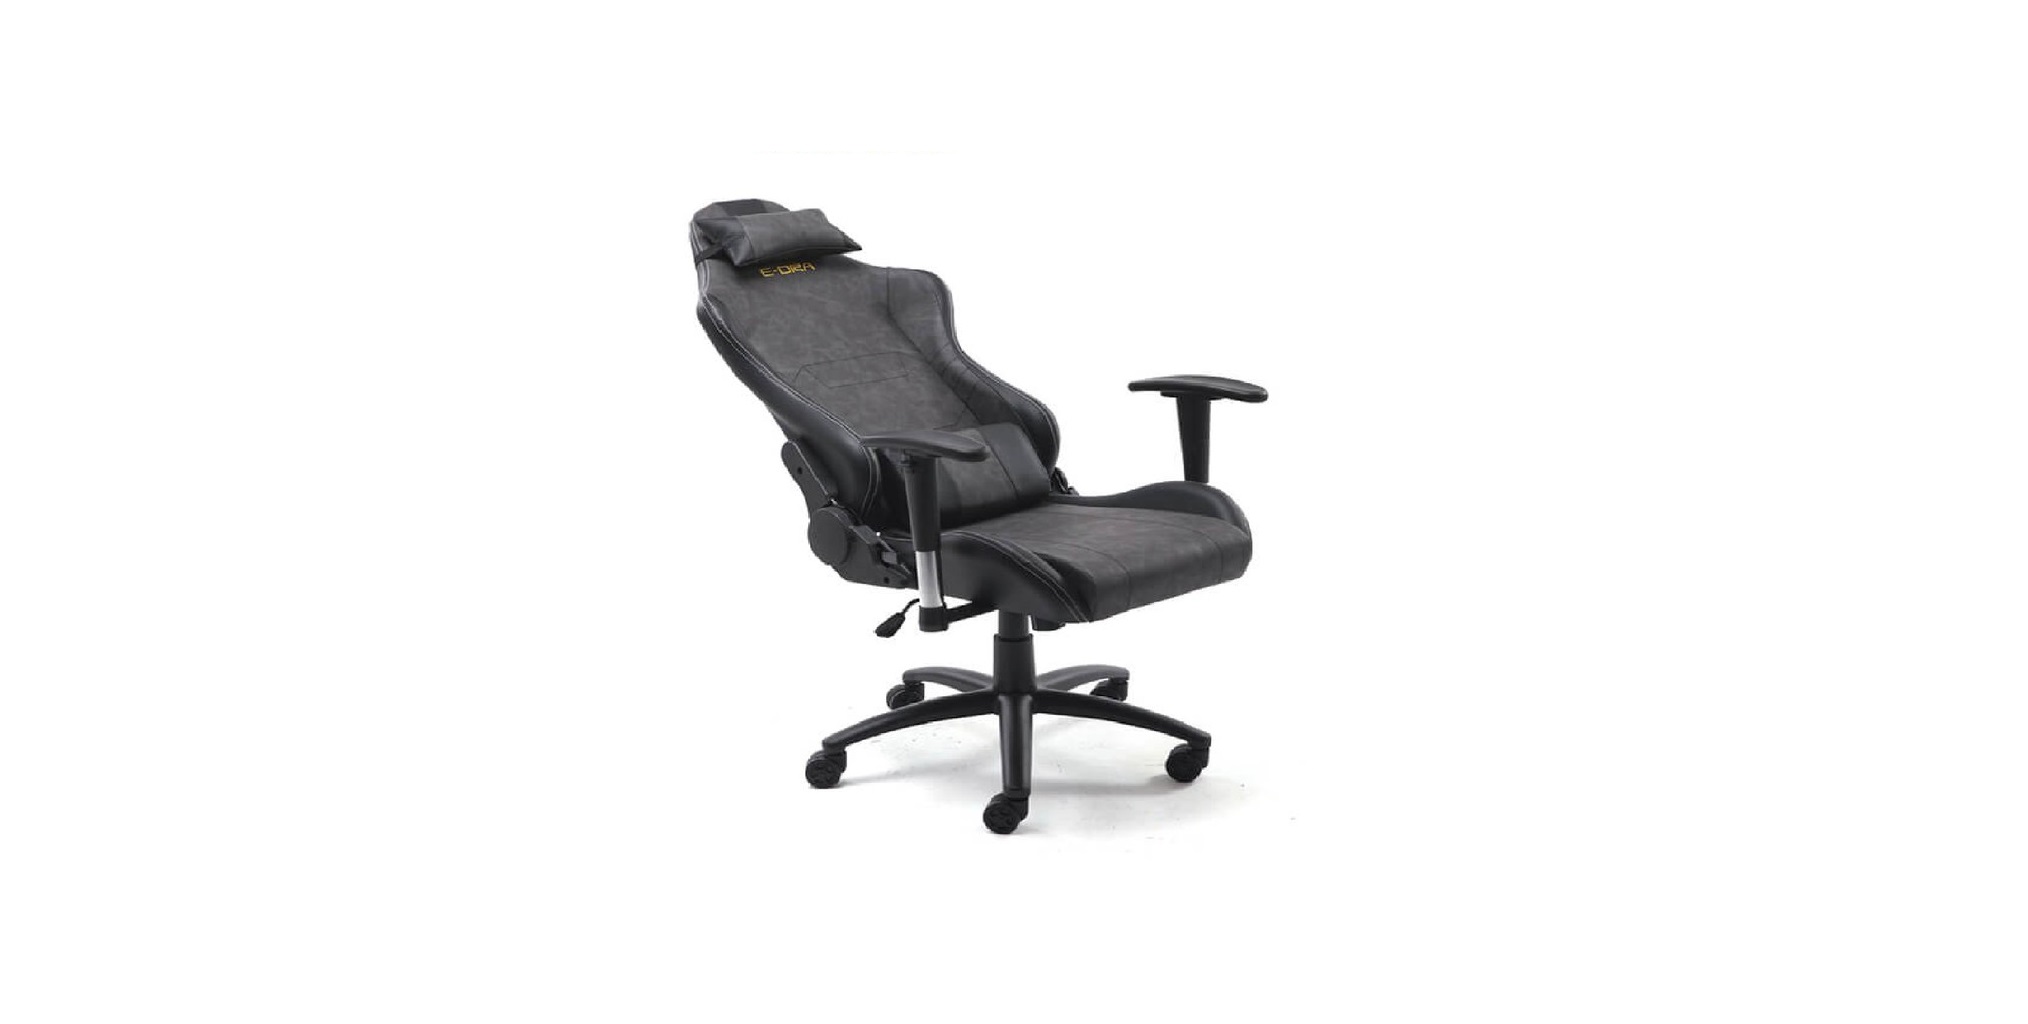 Ghế Gamer E-Dra Midtnight Gaming Chair Black/Gray (EGB025) có thiết kế vượt trội trong tầm giá tiền 